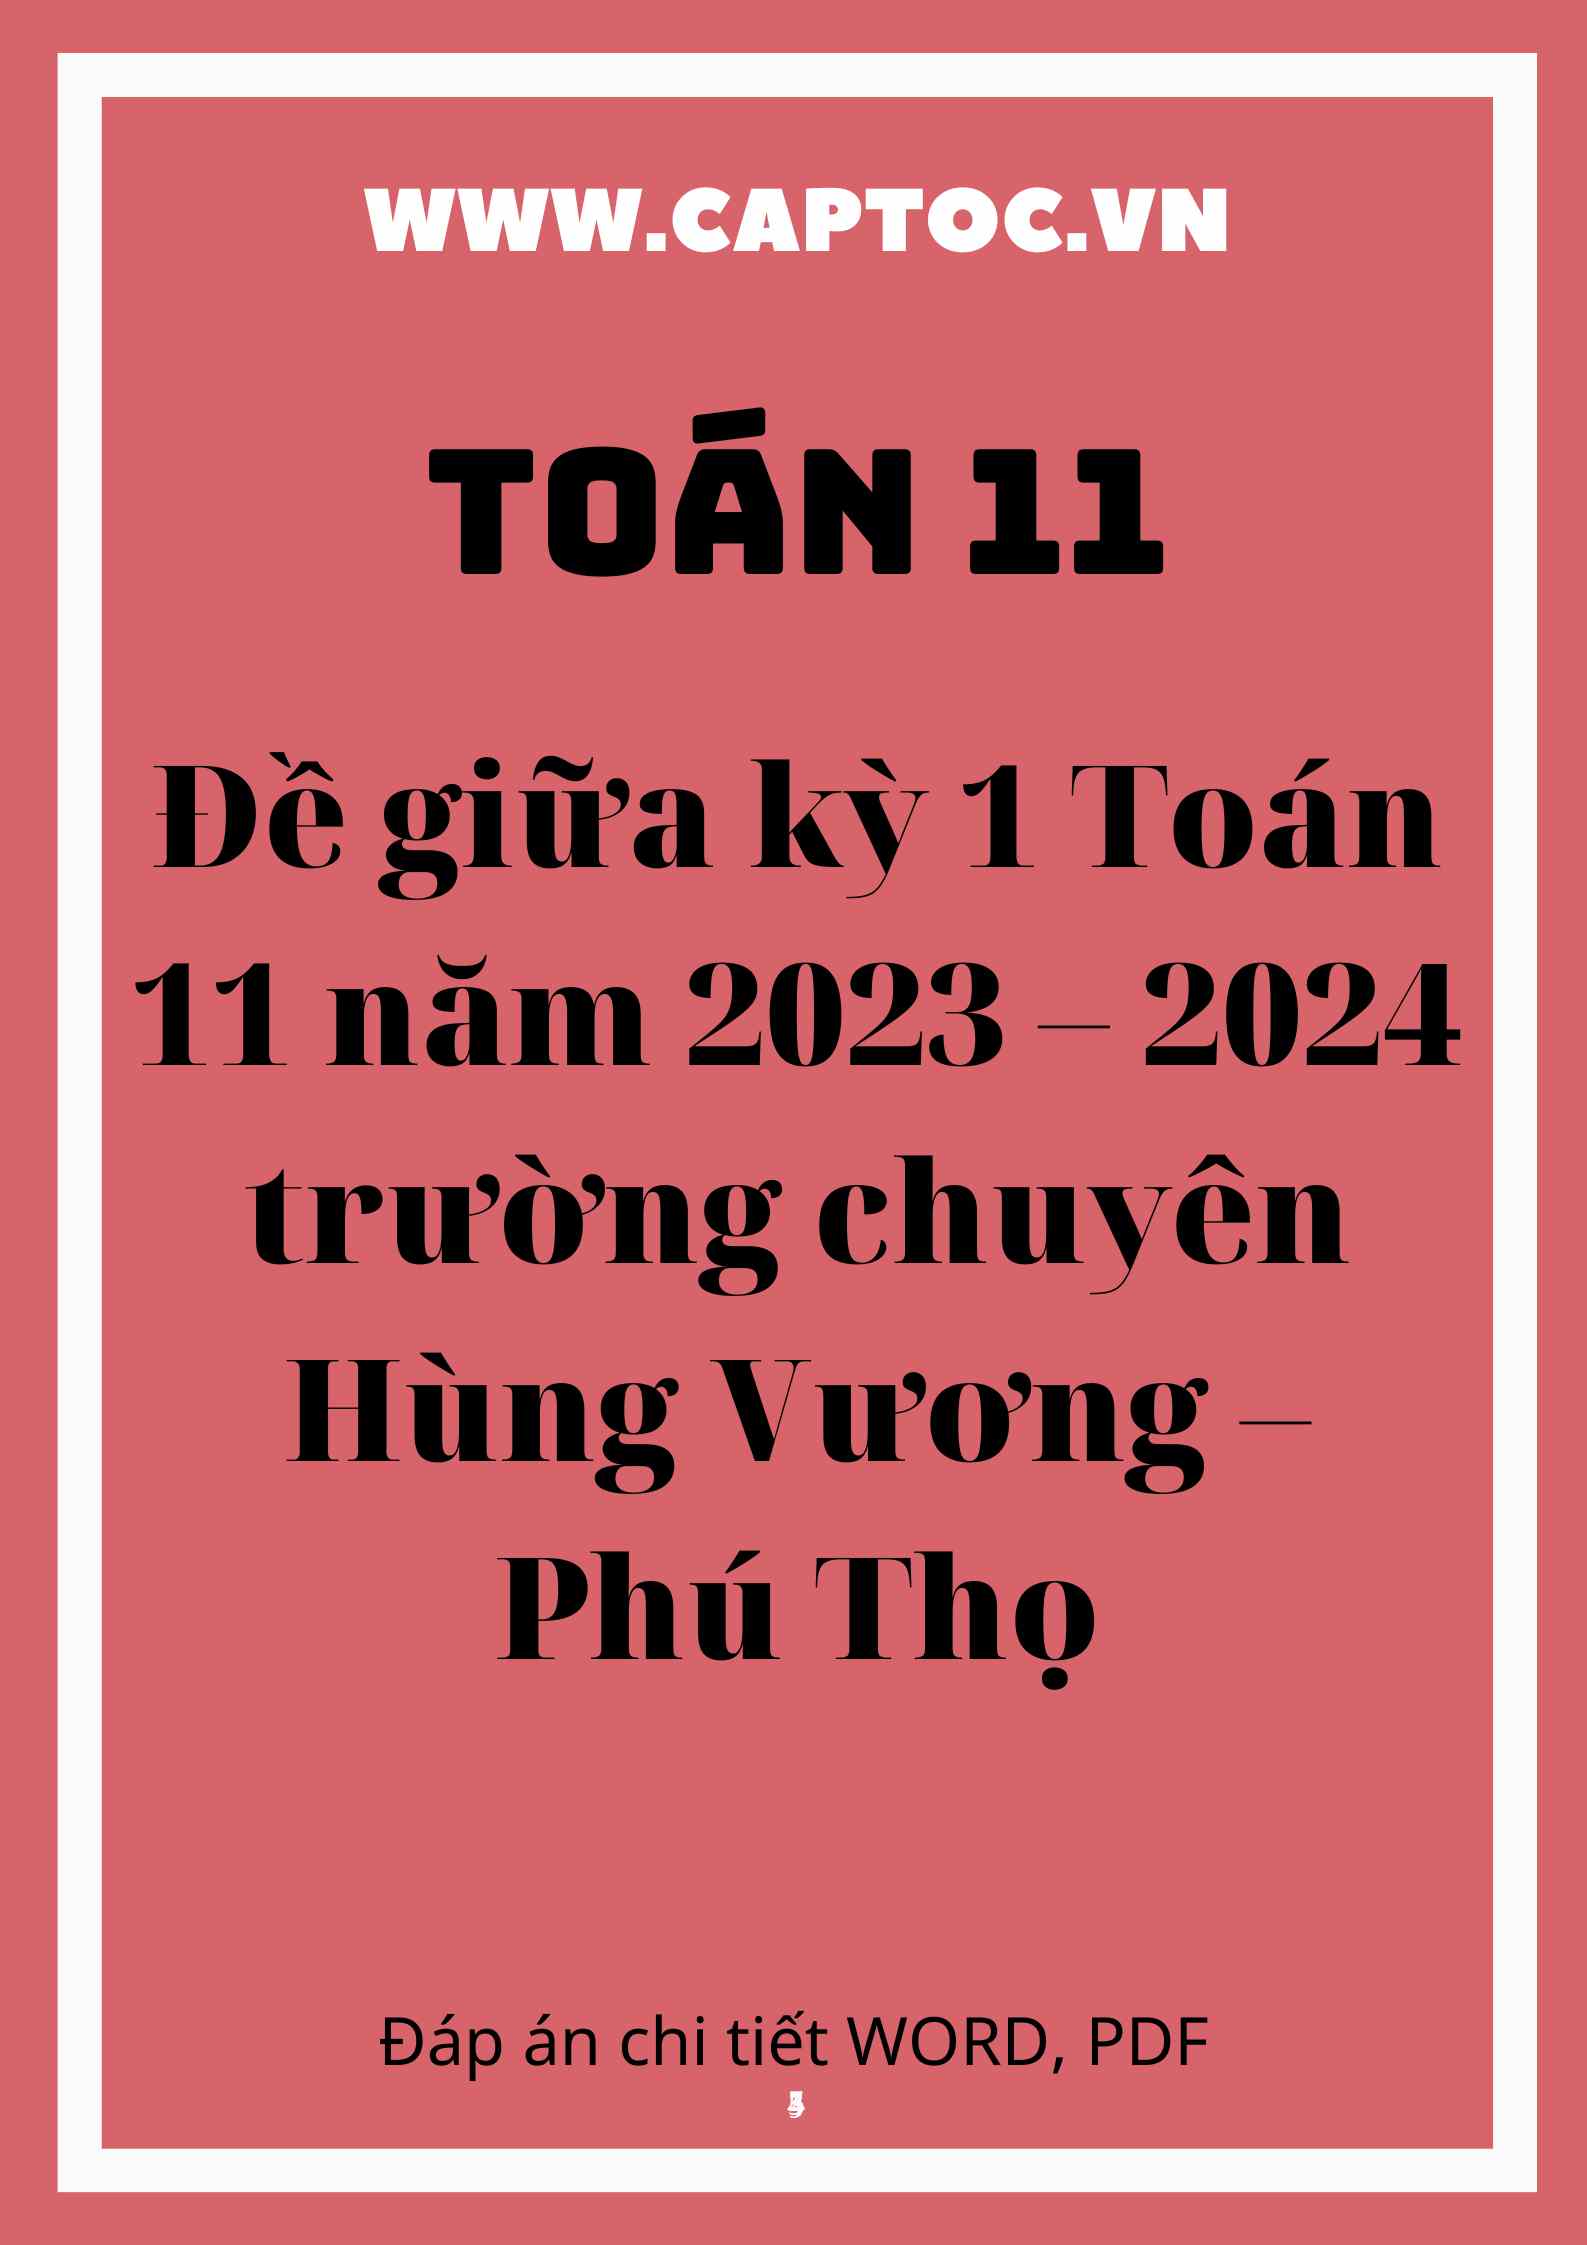 Đề giữa kỳ 1 Toán 11 năm 2023 – 2024 trường chuyên Hùng Vương – Phú Thọ